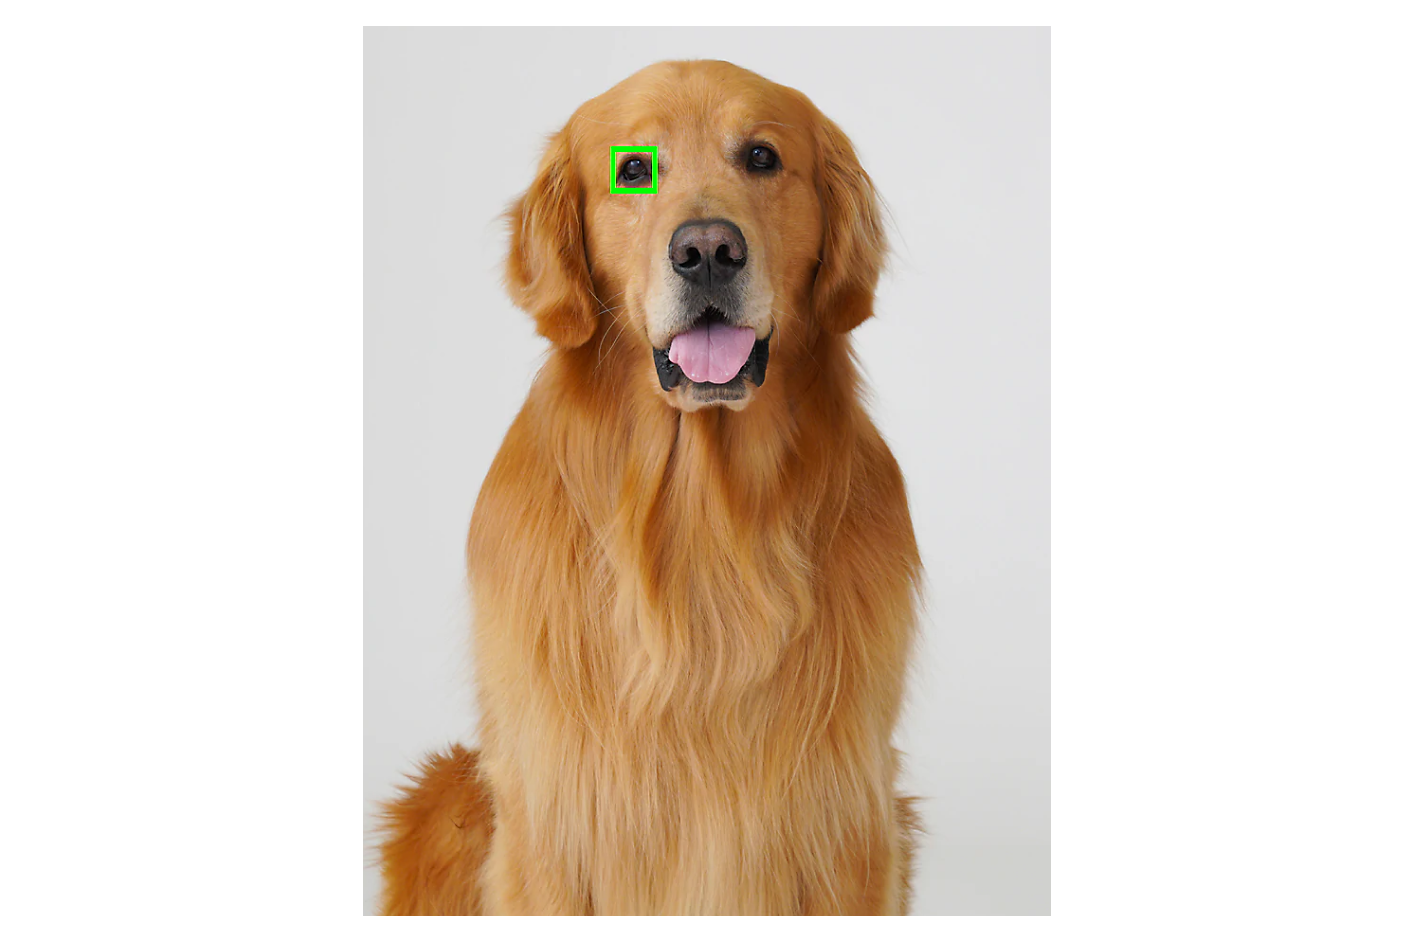 Золотистый ретривер сидит на сером фоне: его глаз обрамляет зеленый квадрат фокусирования.